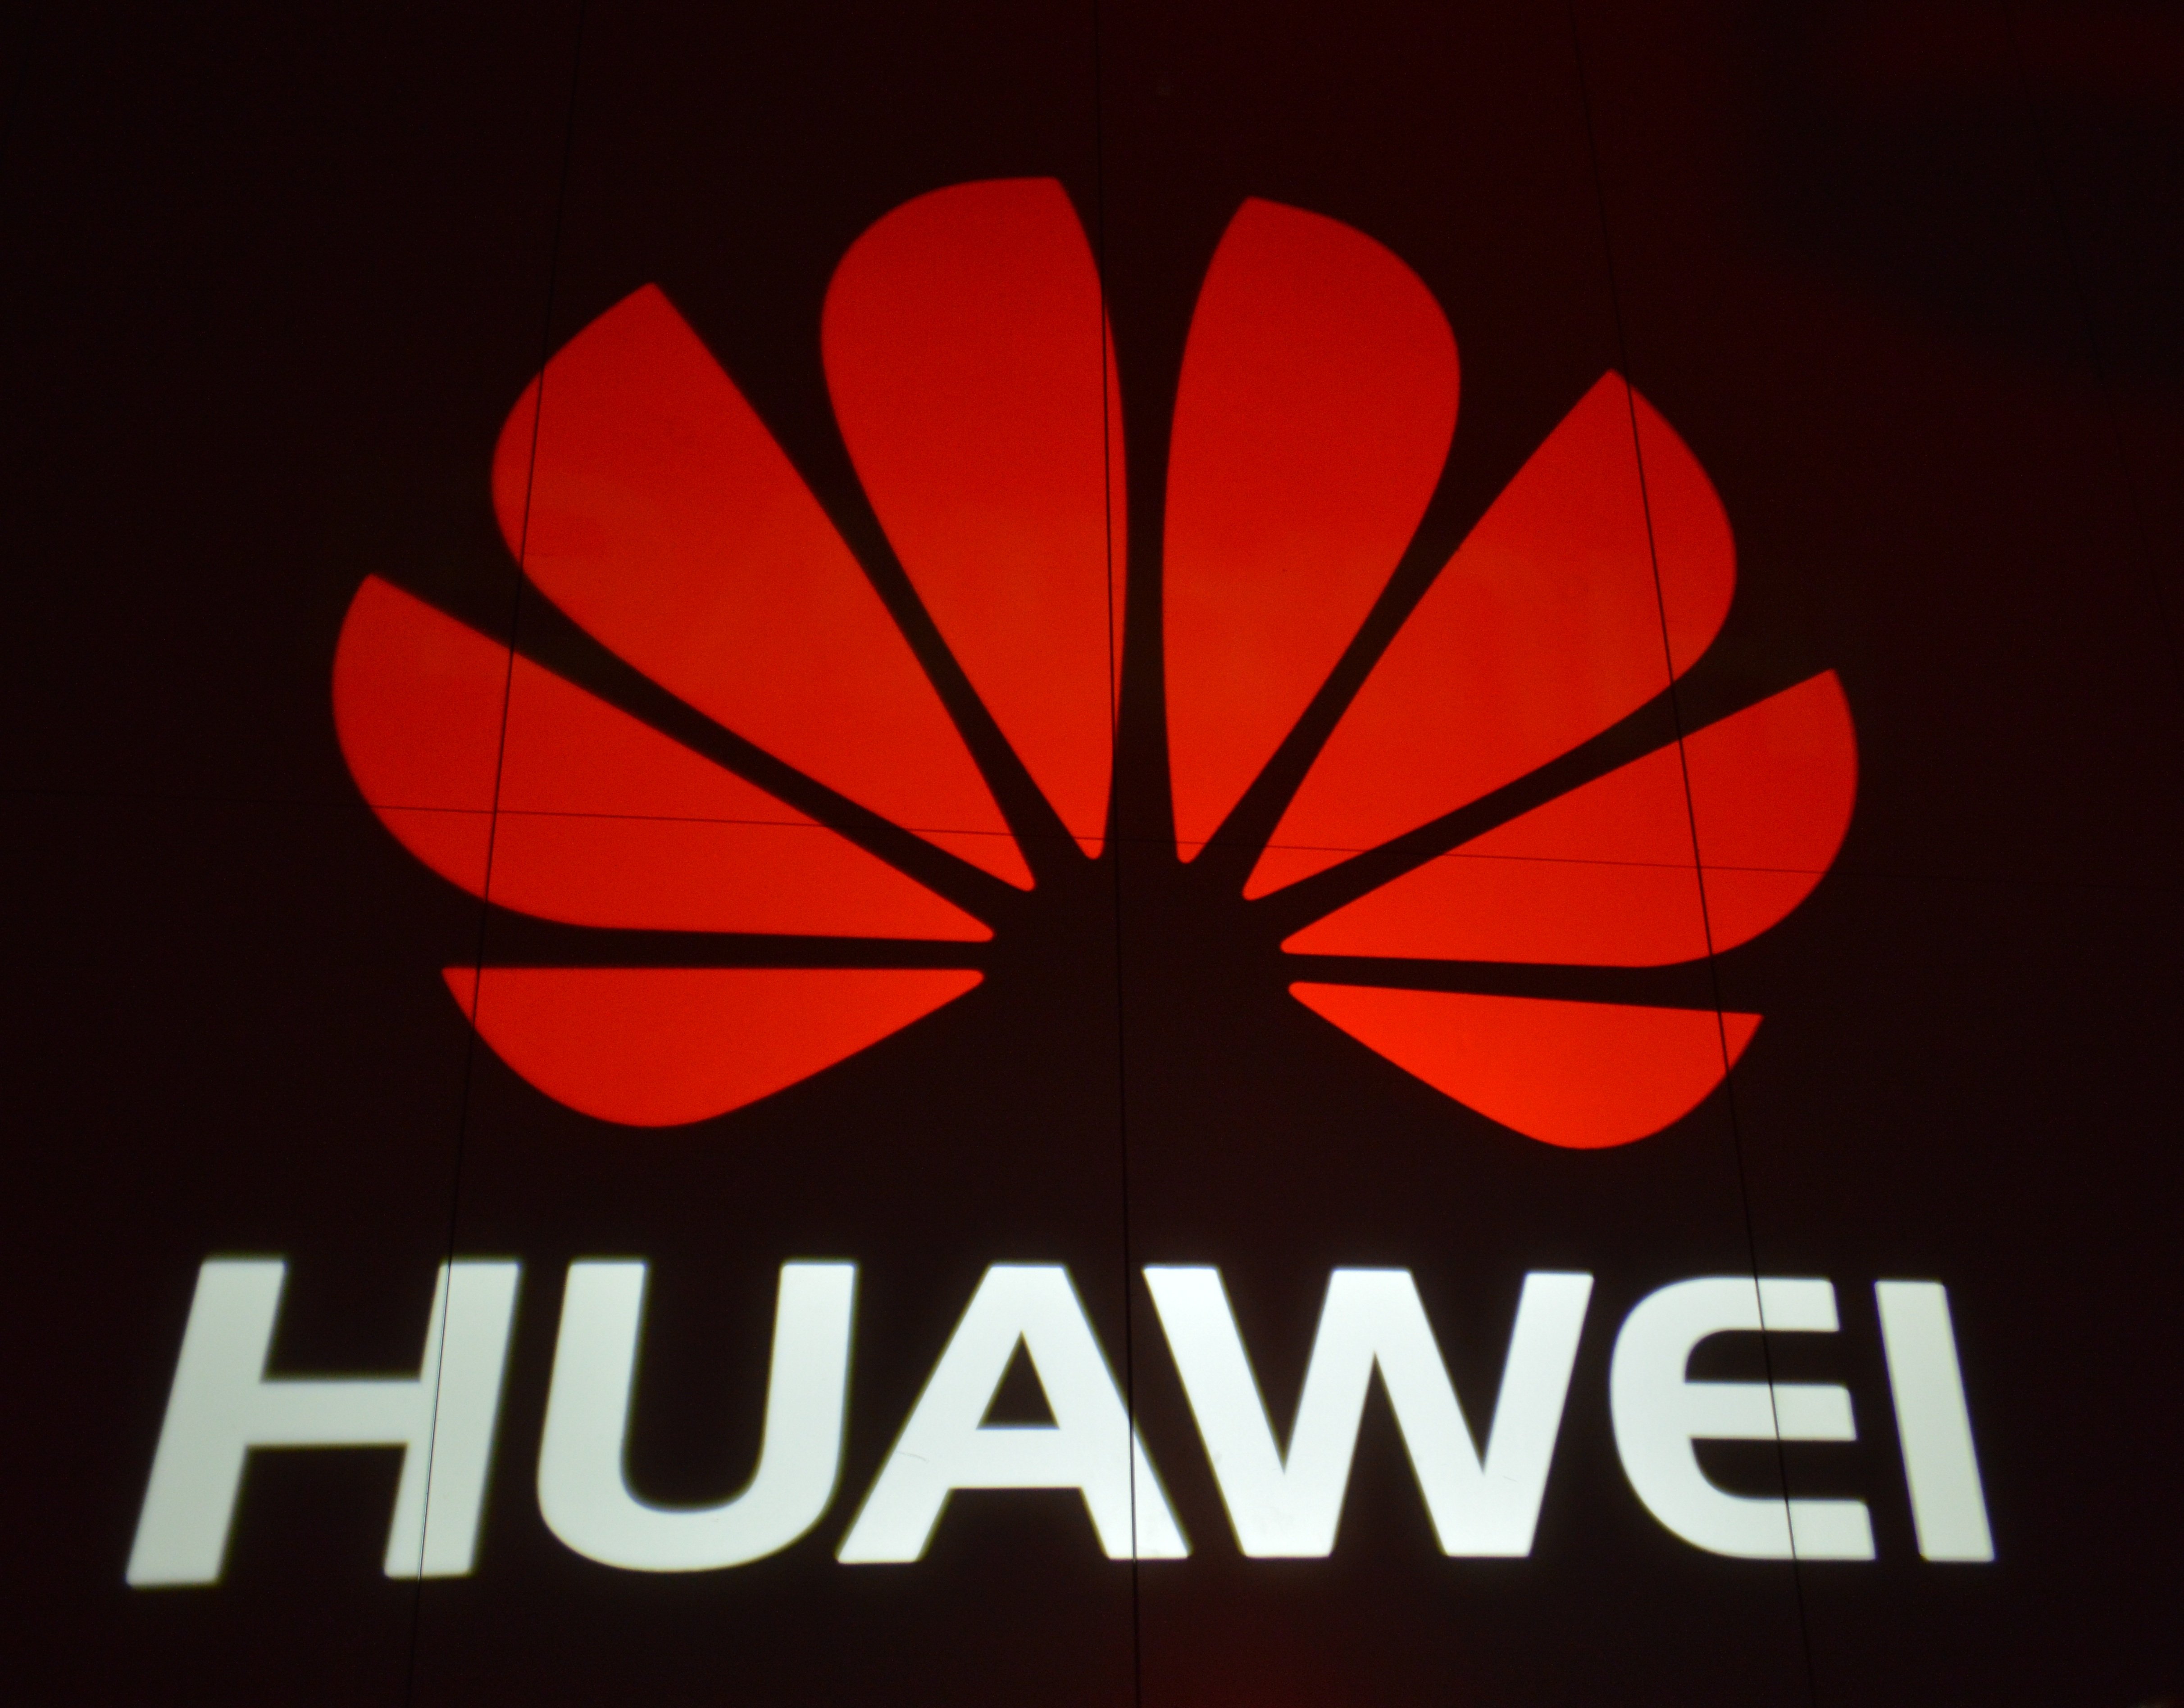 Телефон хуавей на столе. Huawei log. Обои вертикальные логотип Huawei. Huawei Technologies. Логотип Хуавей на рабочий стол.